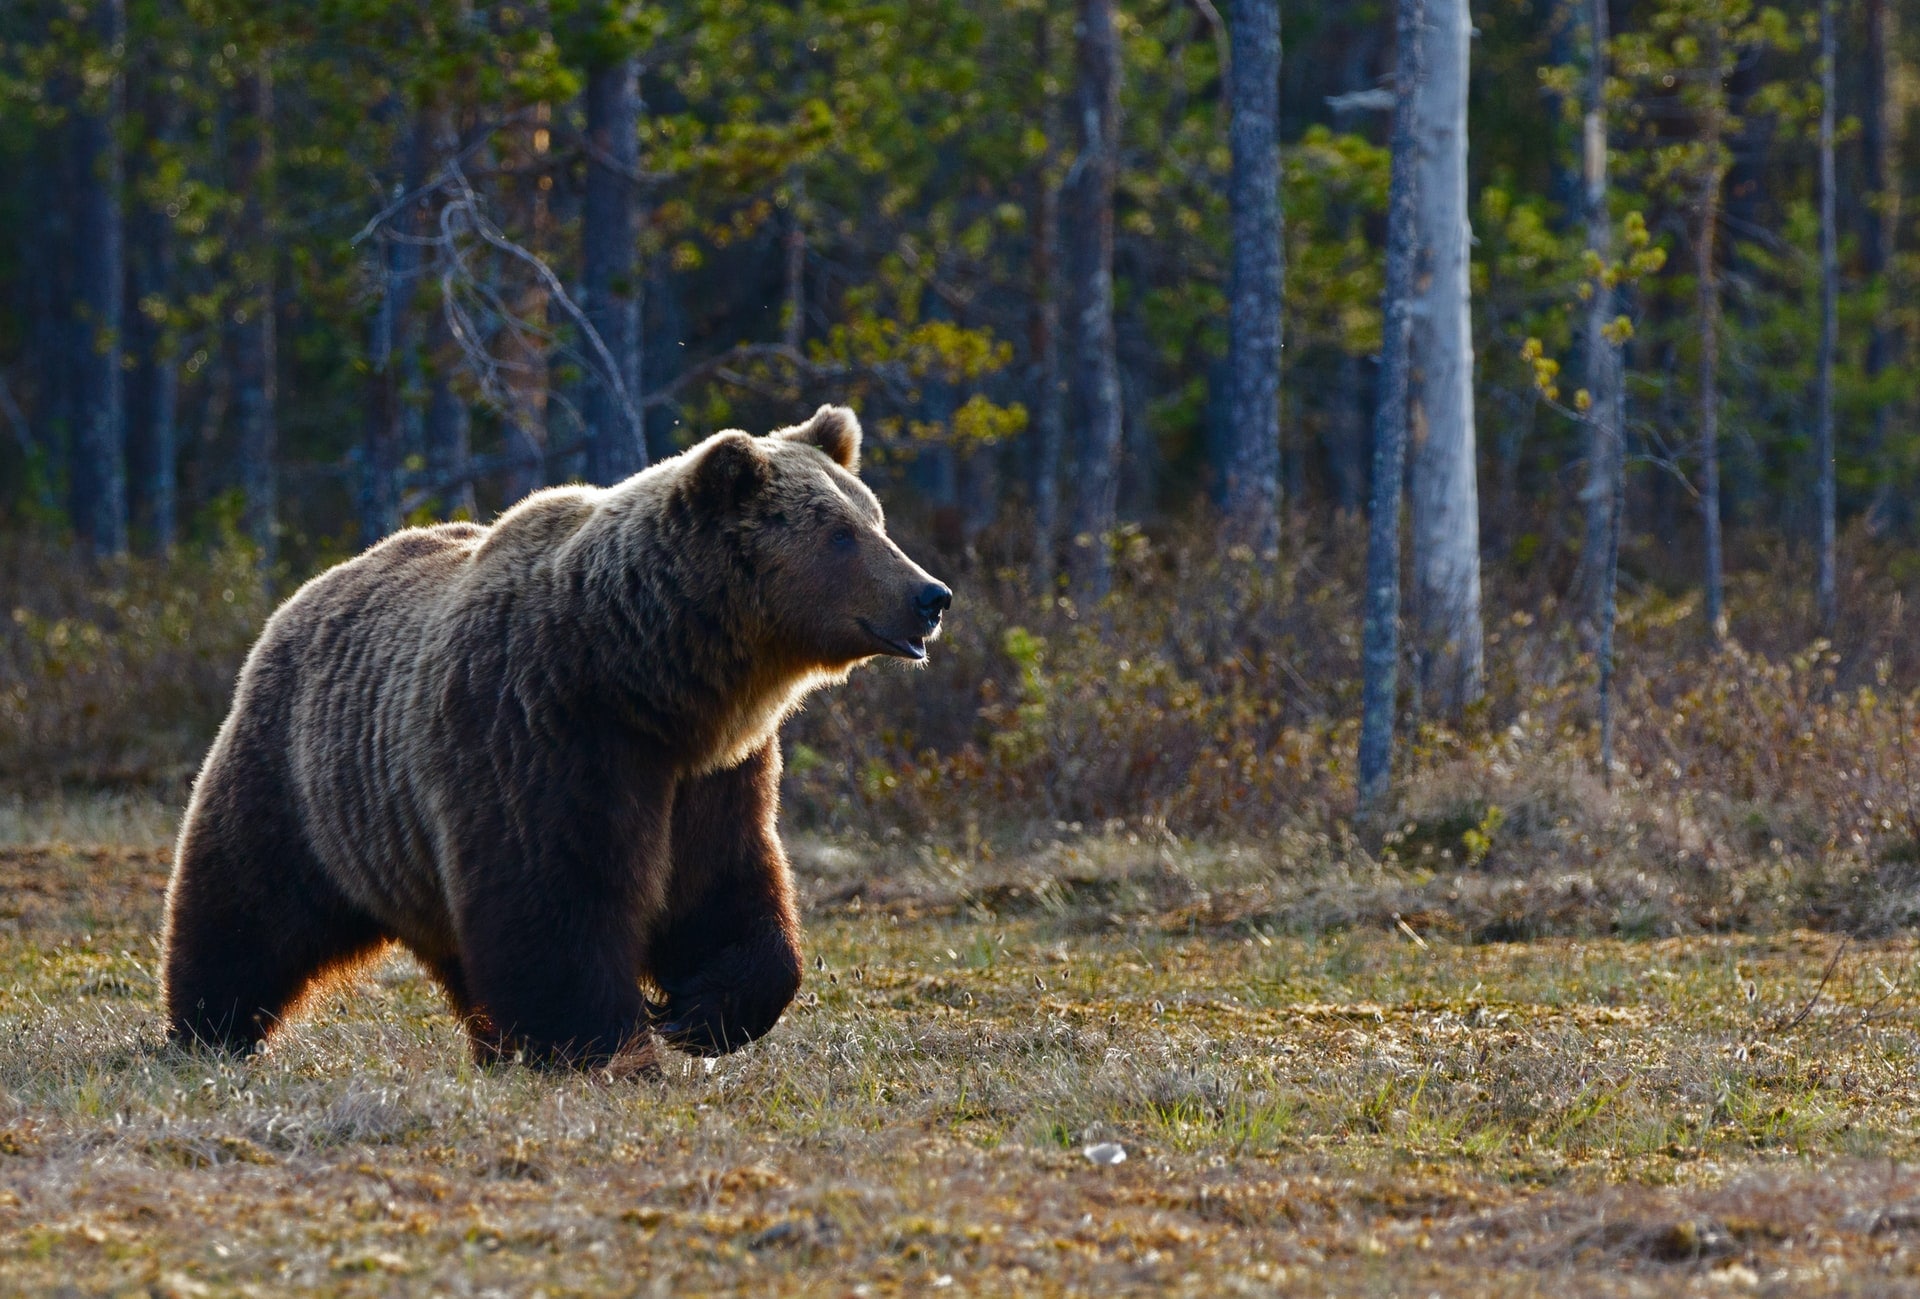 Природа, Происшествия, Томские новости, медведи животные звери дикий мир фауна Томской области Три медведя напугали работников водозабора на севере Томской области, на косолапых объявили охоту